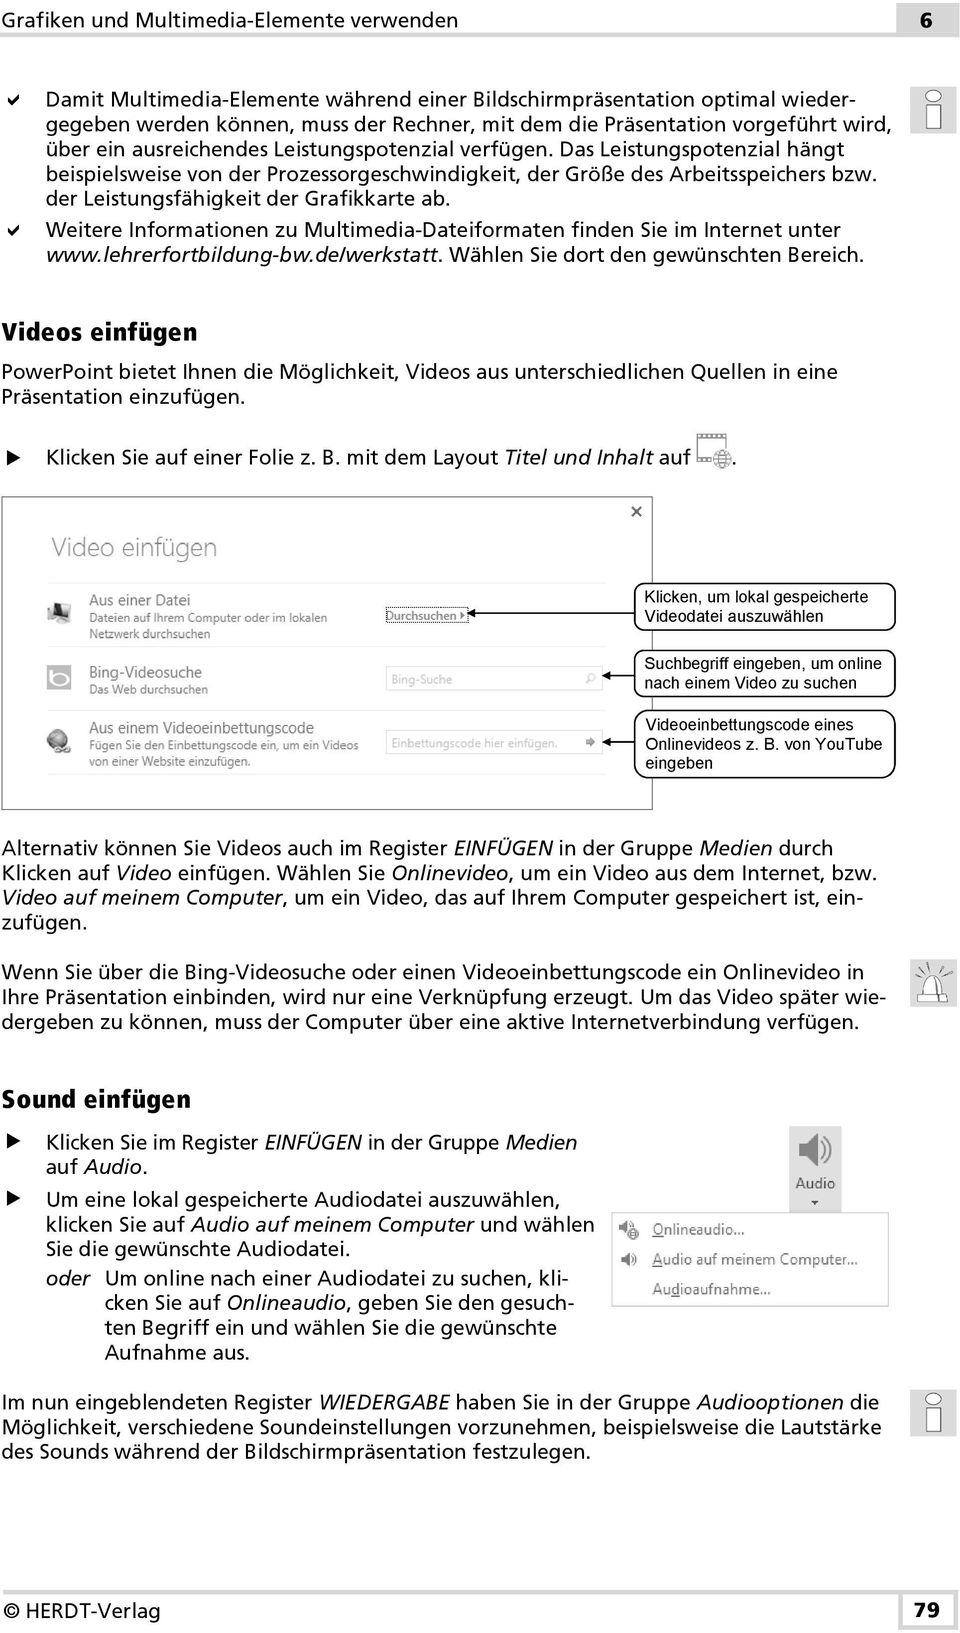 der Leistungsfähigkeit der Grafikkarte ab. Weitere Informationen zu Multimedia-Dateiformaten finden Sie im Internet unter www.lehrerfortbildung-bw.de/werkstatt.